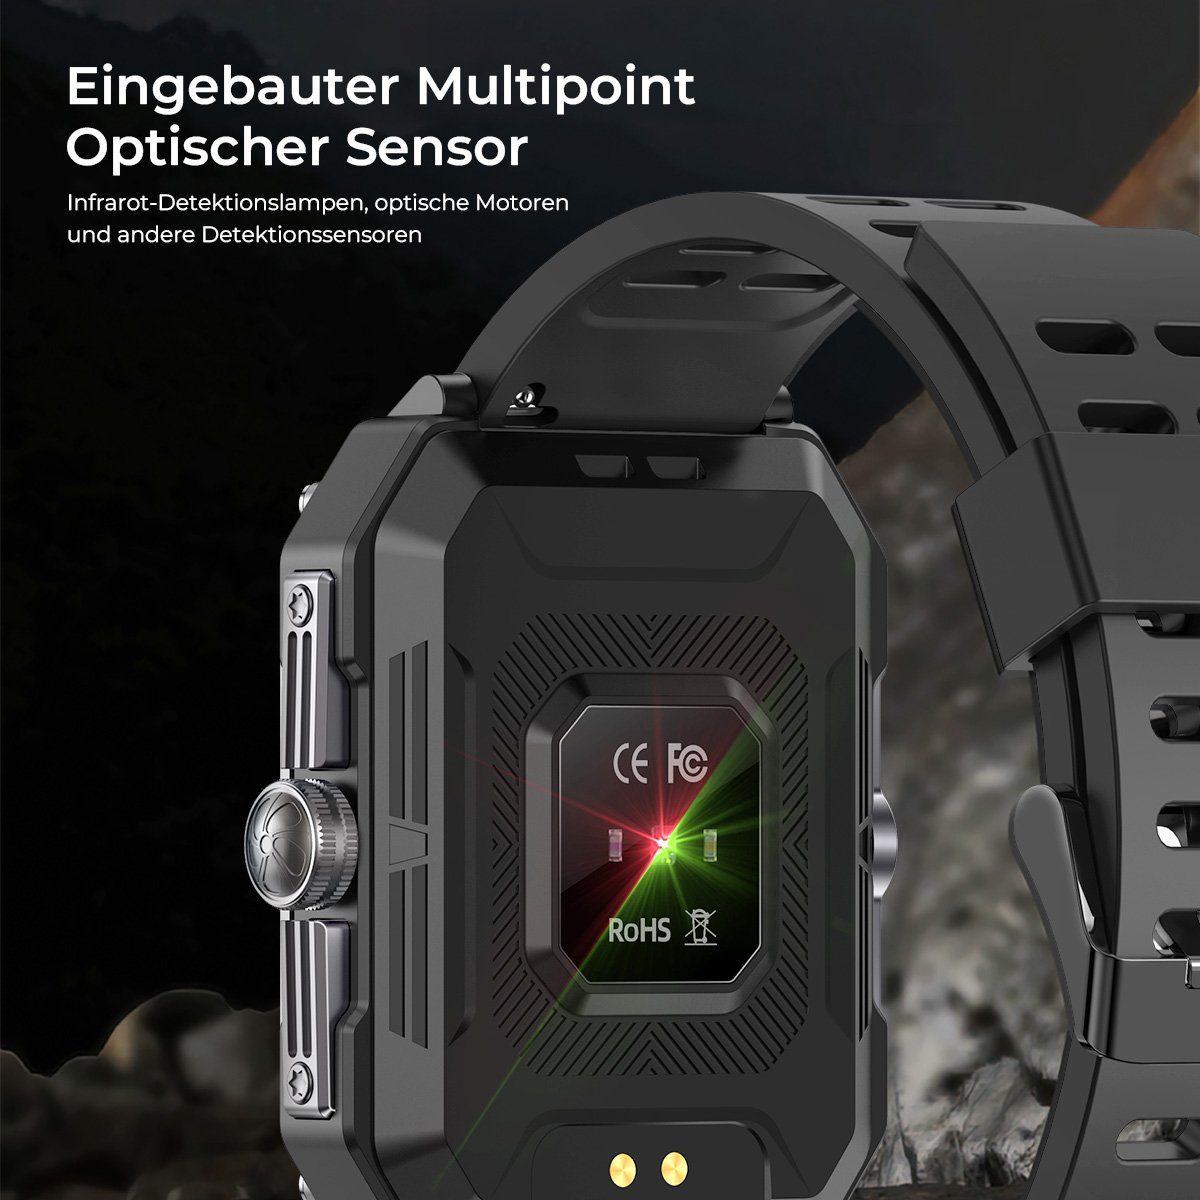 7Magic Smartwatch Smartwatch Orange 2,02” (2.02 Wasserdicht Zoll), Tracker, Schlafmonito Fitness Herren Sportuhr IP68 mit Outdoor Touchscreen Telefonfunktion Damen